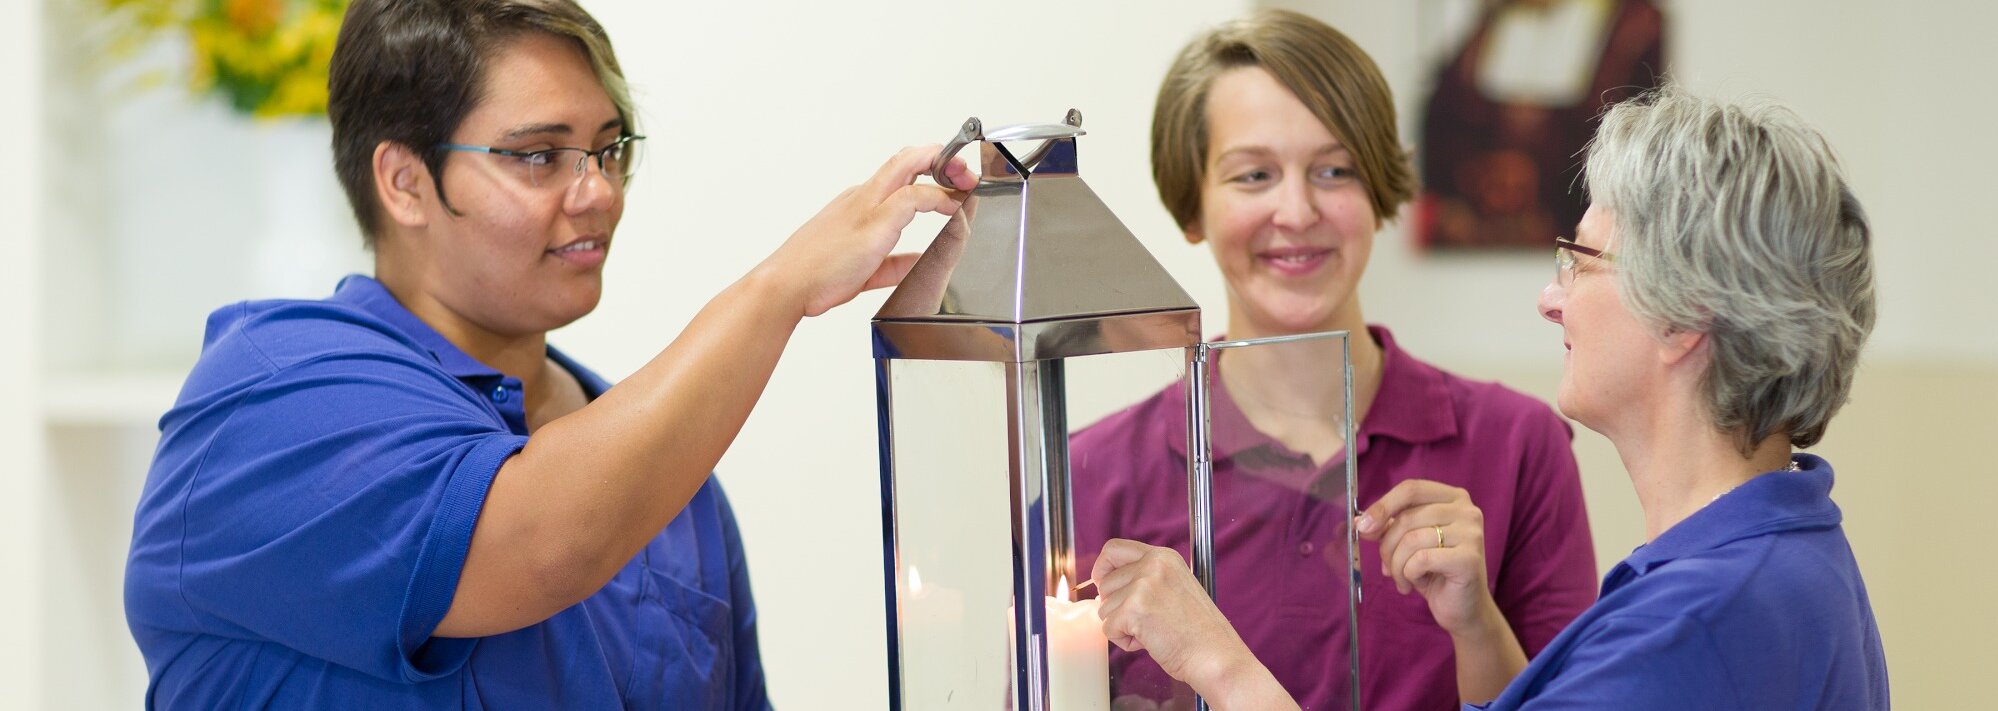 Drei Mitarbeiterinnen entzünden gemeinsam eine Kerze in einer Edelstahllaterne mit Glasfenstern